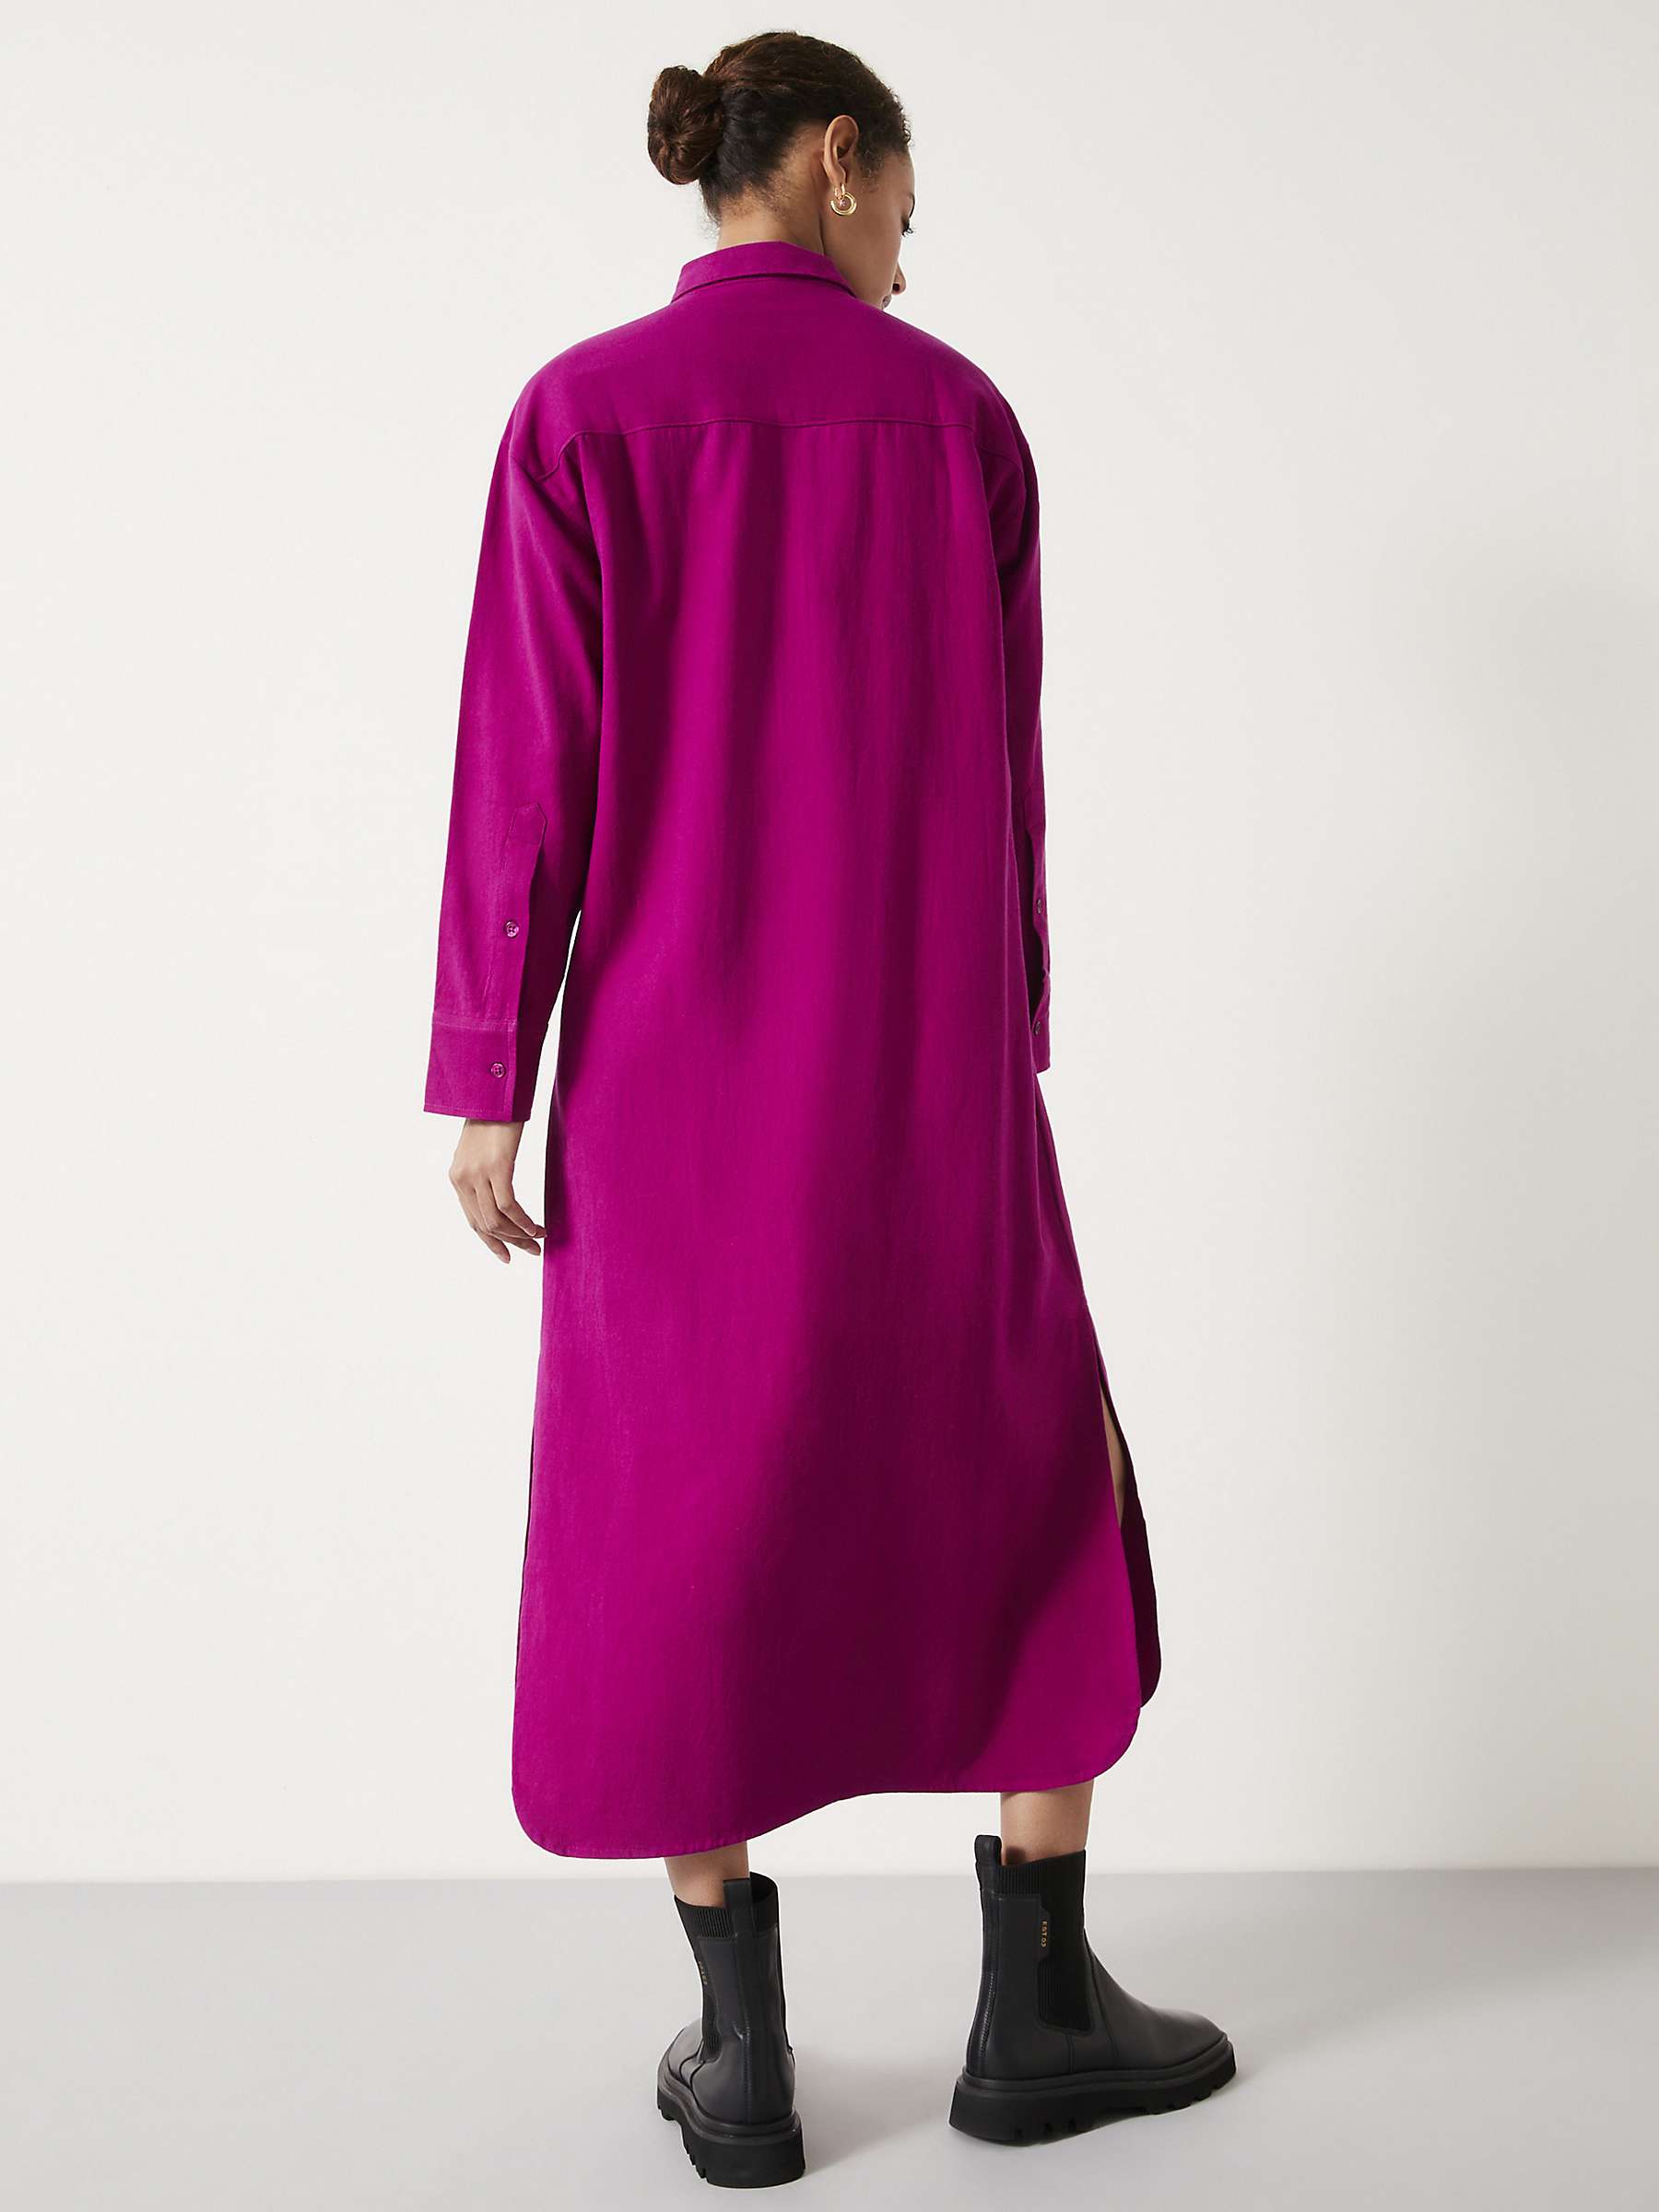 HUSH Alexa Maxi Shirt Dress, Dark Pink at John Lewis & Partners